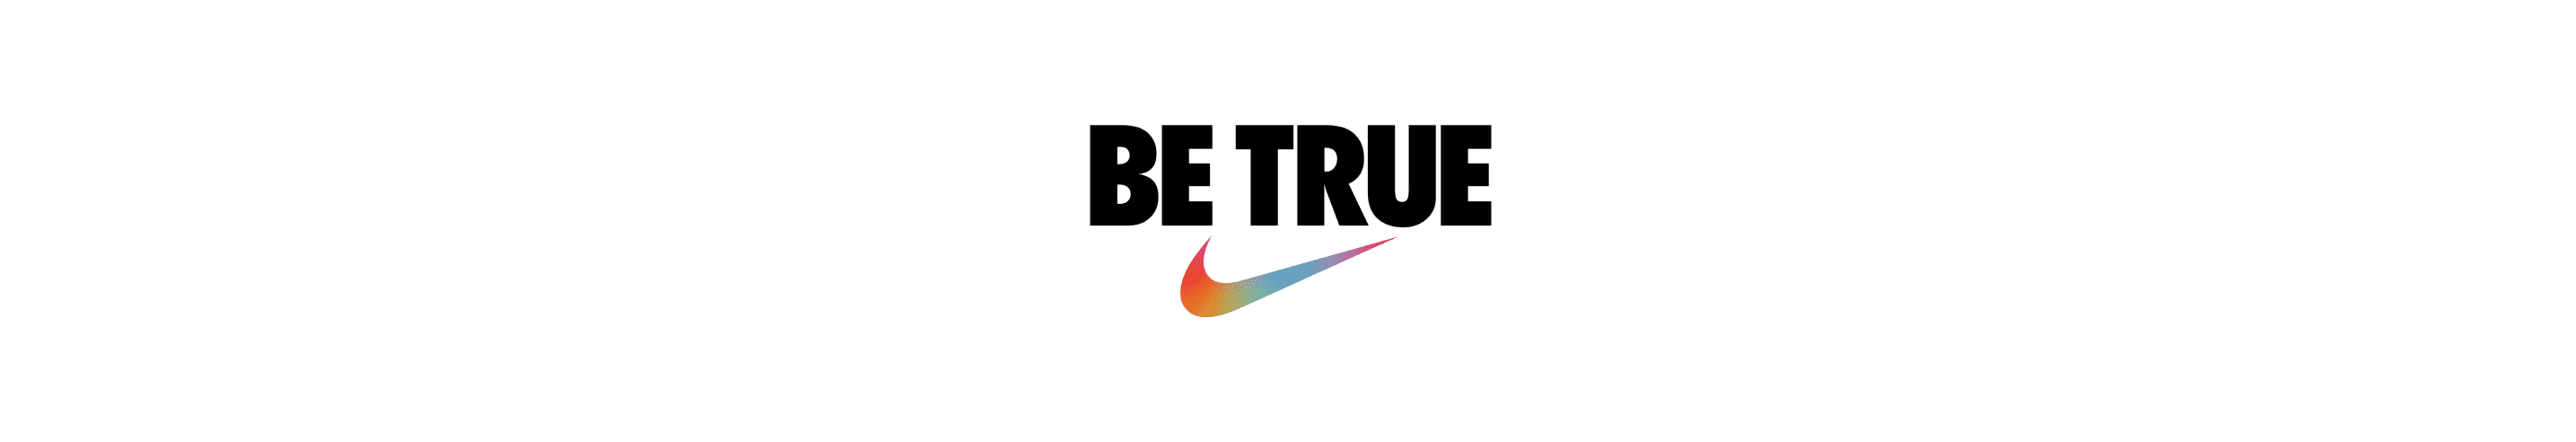 BETRUE. Nike.com